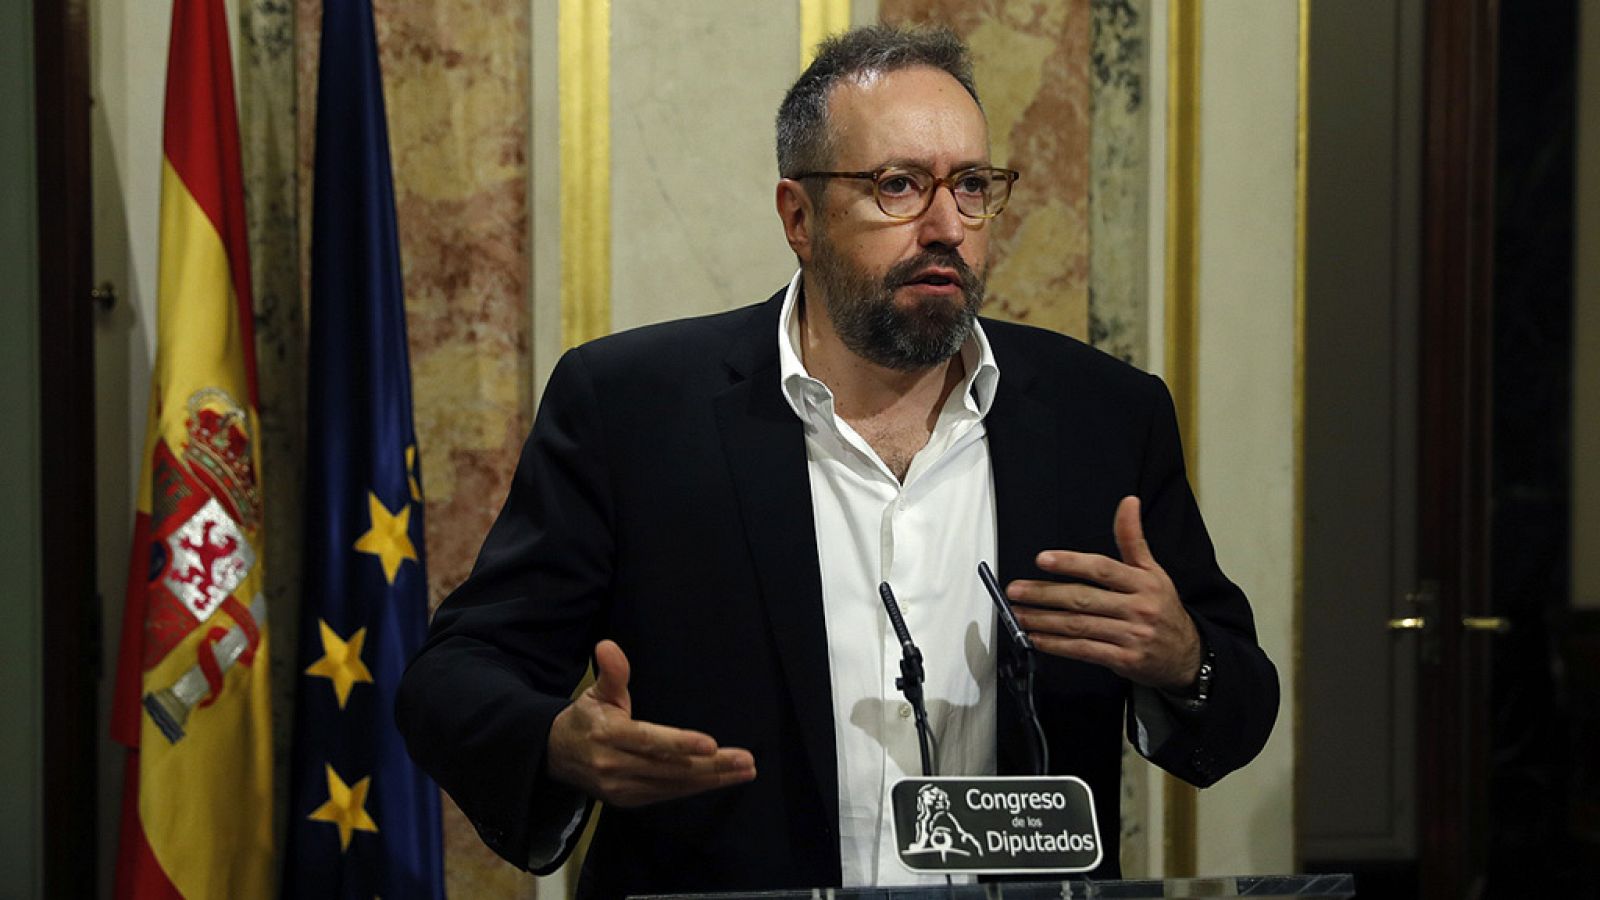 Especiales informativos: Girauta califica del discurso de Rajoy de "correcto" aunque también de "conformista" | RTVE Play